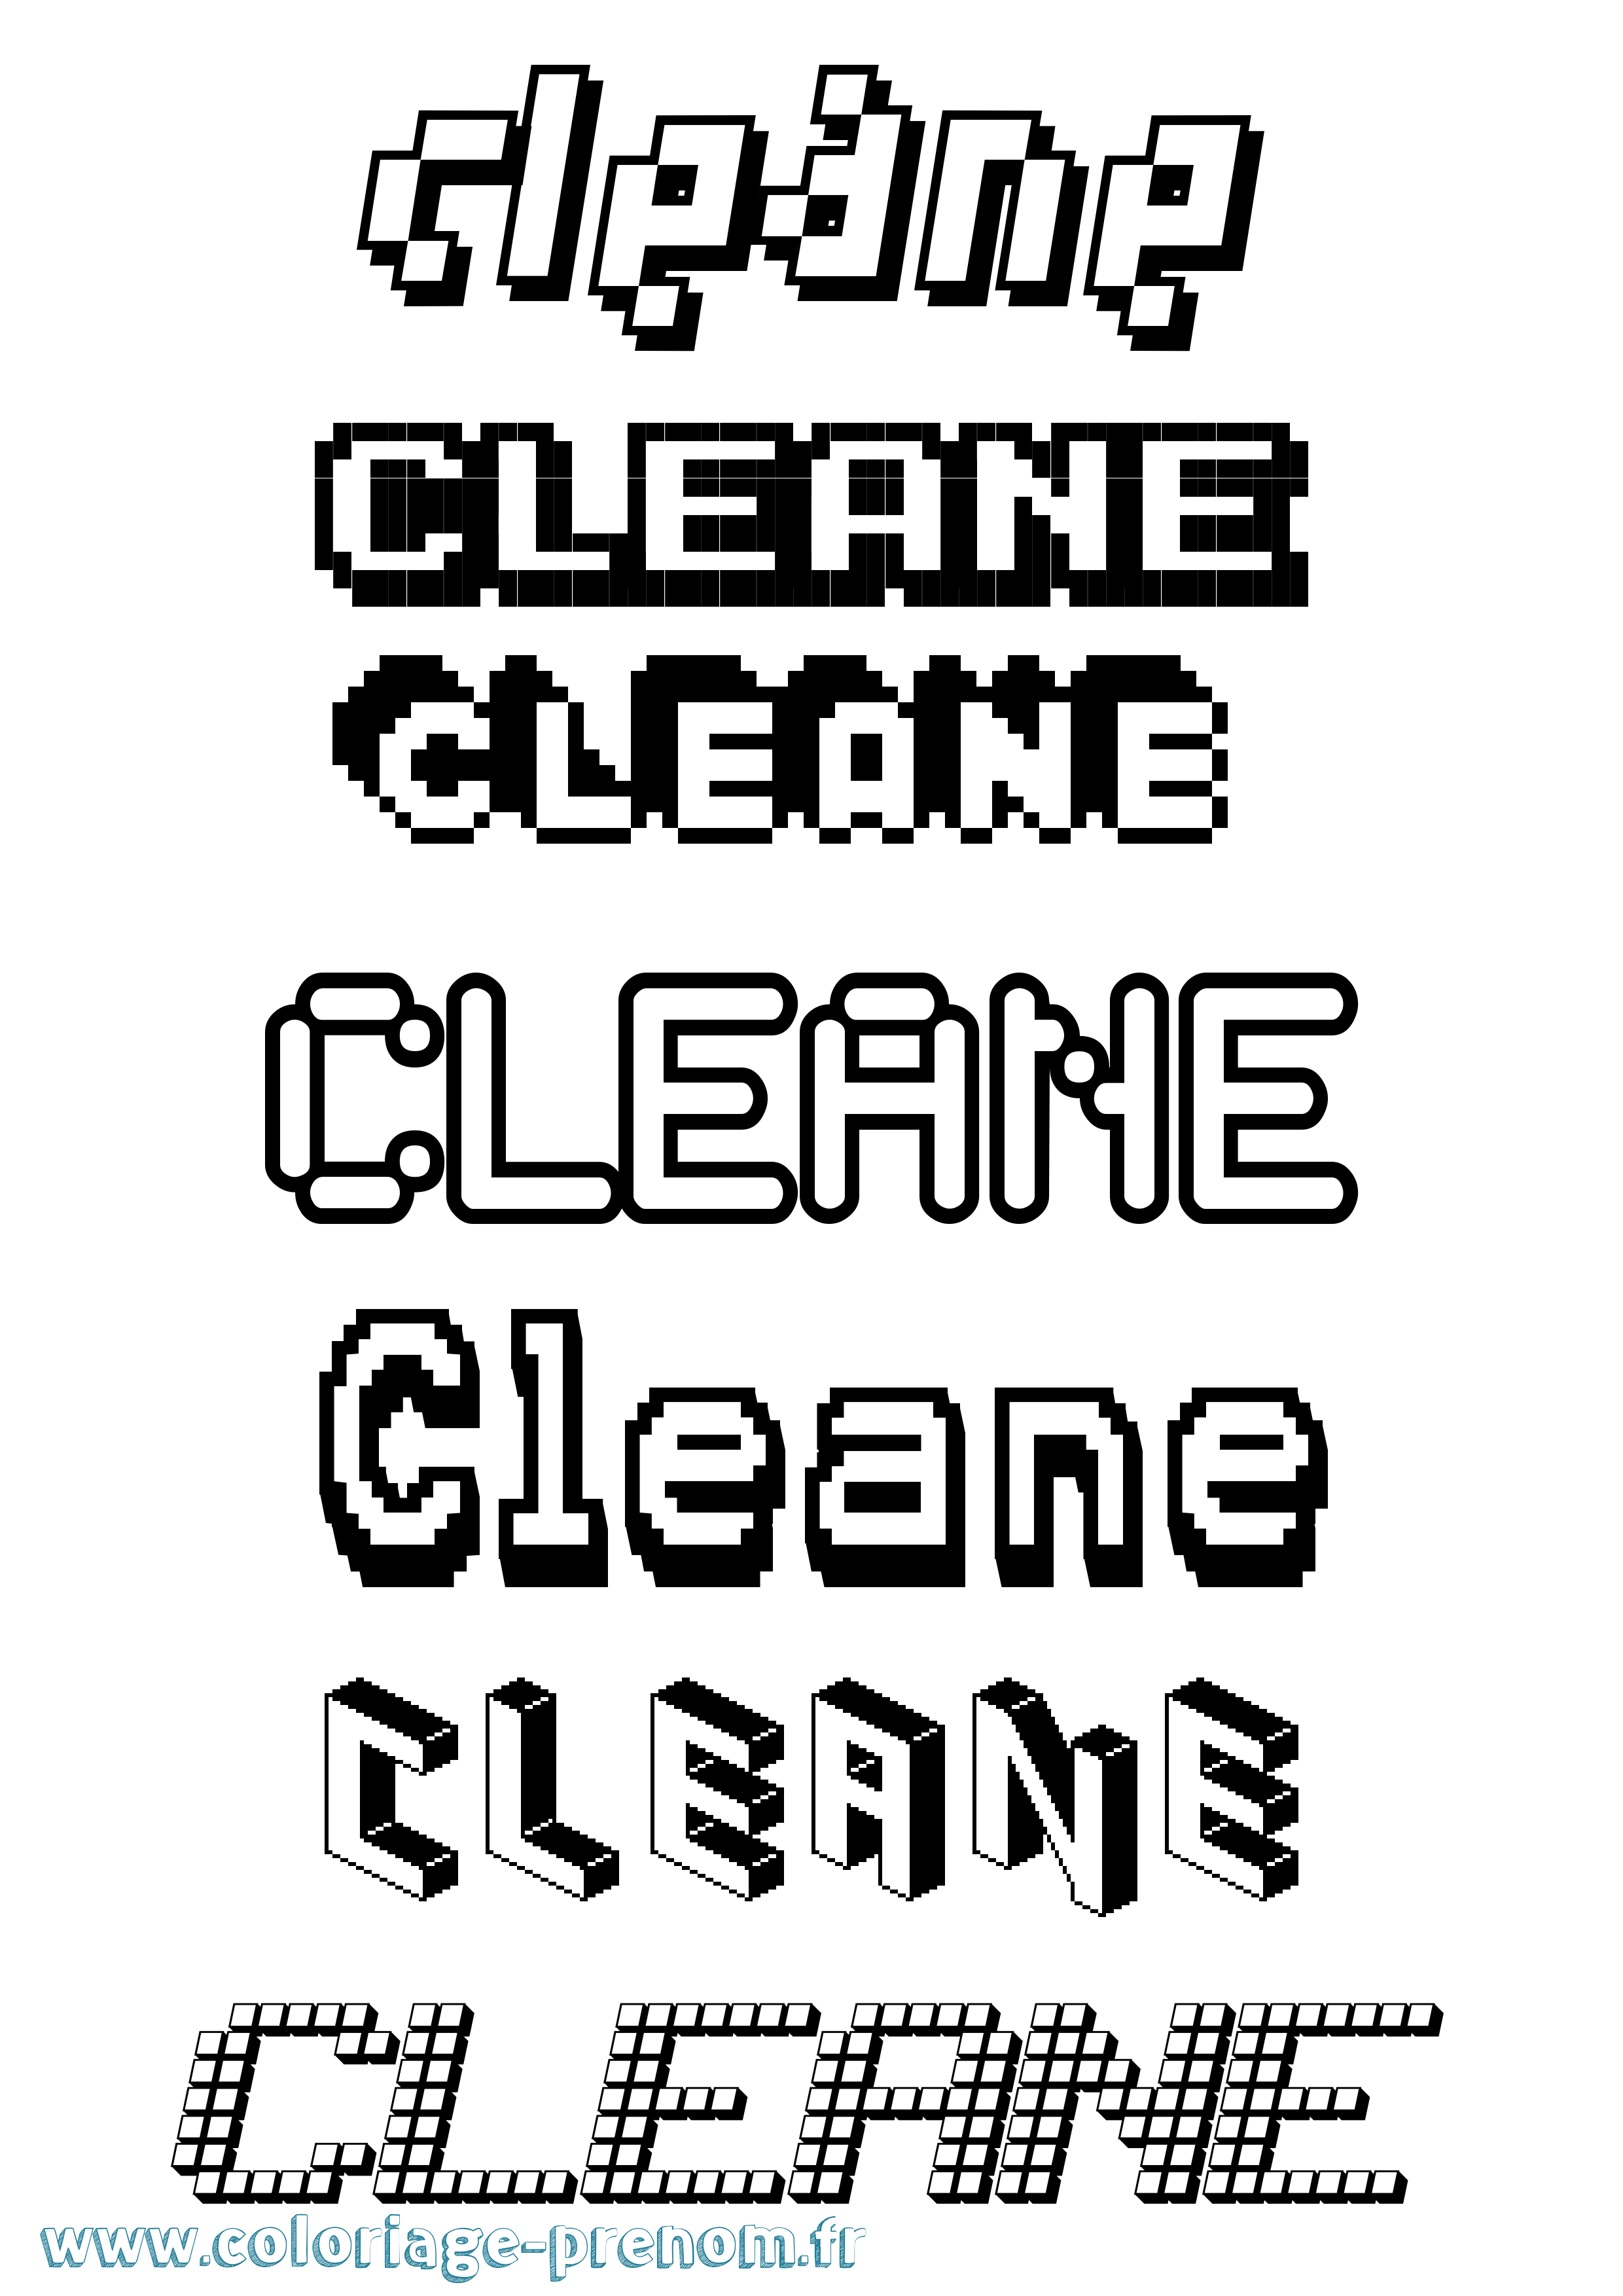 Coloriage prénom Cleane Pixel